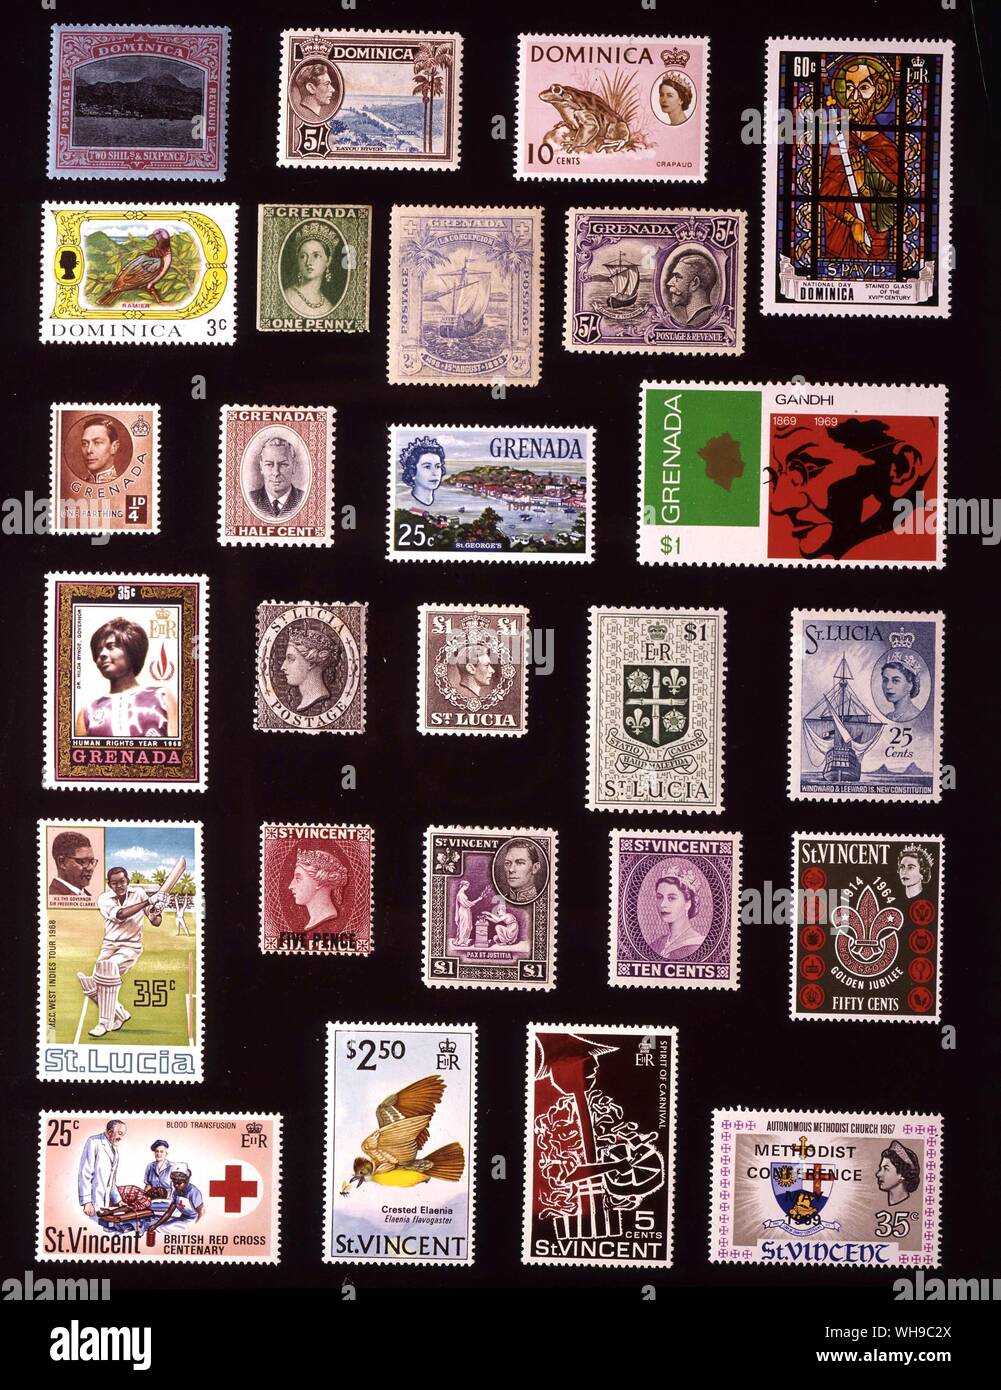 AMERICA - isole Winward: (da sinistra a destra) 1. Dominica, 2 scellini 6 pence, 1921, 2. Dominica, 5 scellini, 1938, 3. Dominica, 10 centesimi, 1963, 4. Dominica, 60 centesimi, 1969, 5. Dominica, 3 centesimi, 1969, 6. Grenada, 1 centesimo, 1861, 7. Grenada, 2,5 pence, 1898, 8. Grenada, 5 scellini, 1934, 9. Grenada, farthing, 1937, 10. Grenada, metà cent, 1951, 11. Grenada, 25 centesimi, 1966, 12. Grenada, 1 dollaro, 1969, 13. Grenada, 35 centesimi, 1969, 14. St Lucia, 1 centesimo, 1864, 15. St Lucia, 1 pound, 1946, 16. St Lucia, 1 dollaro, 1953, 17. St Lucia, 25 centesimi, 18. St Lucia, 35 centesimi, 1968, 19. St Vincent, 5 pence, Foto Stock